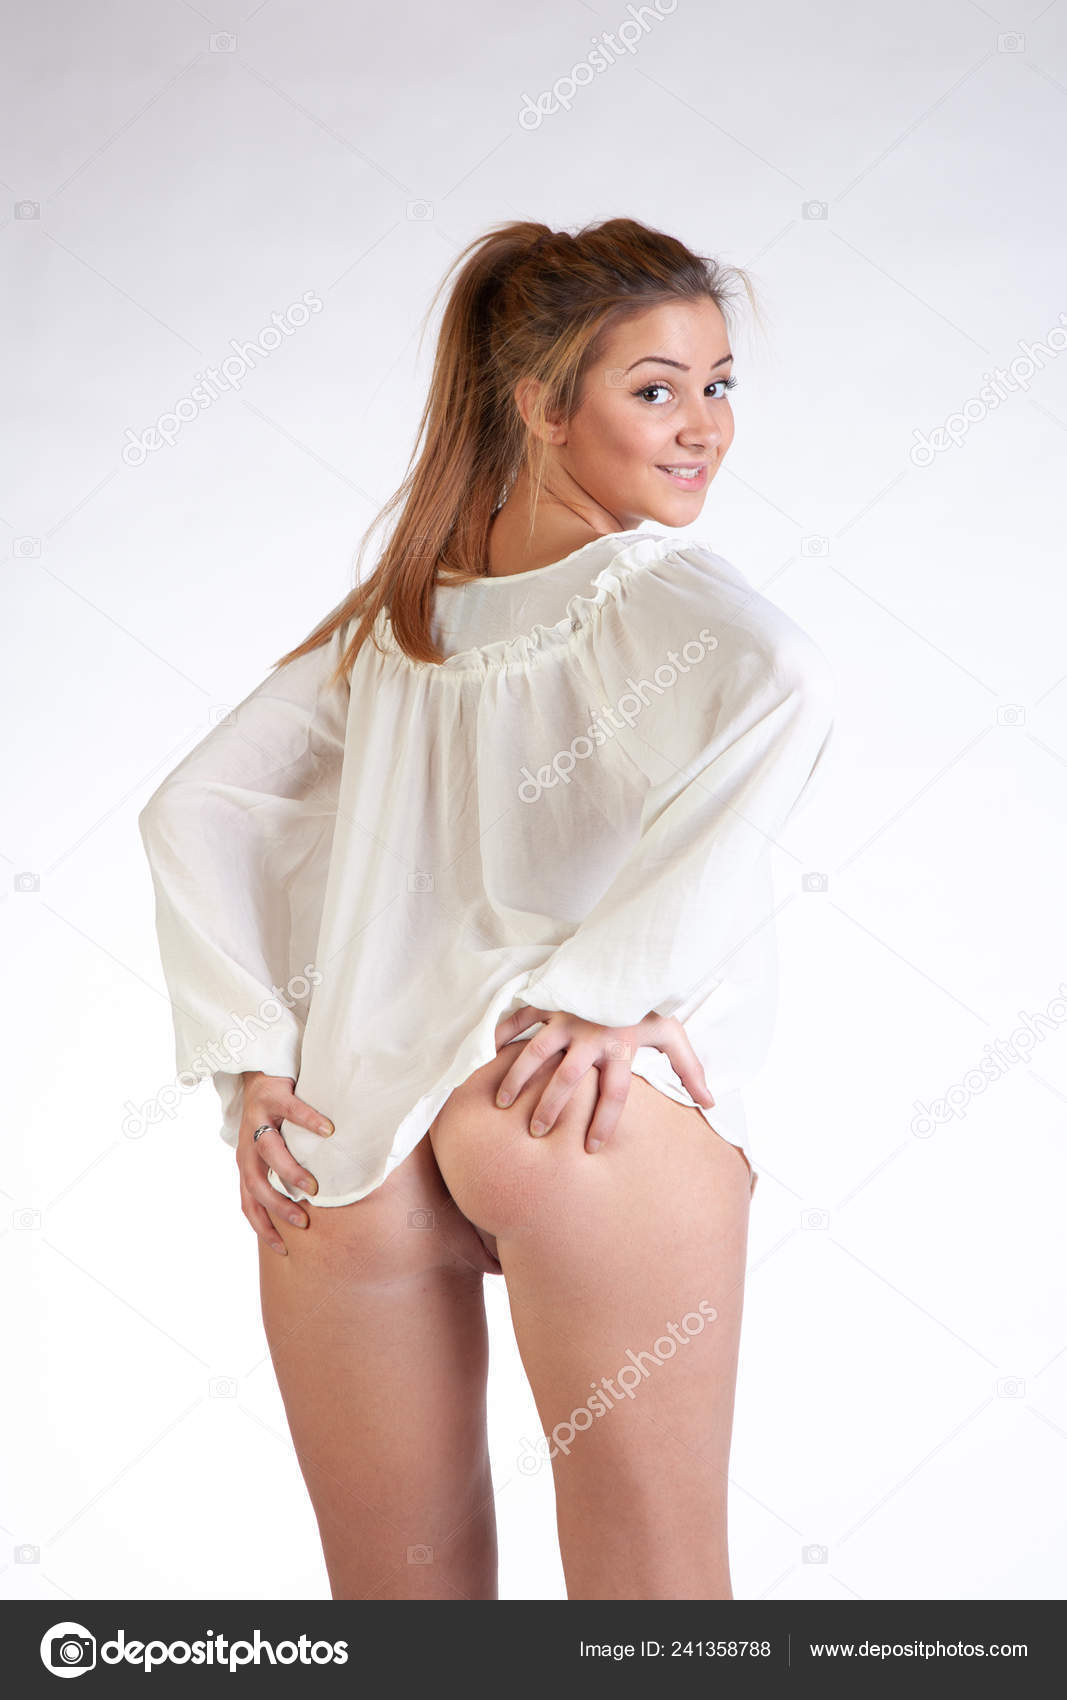 https://st4n.depositphotos.com/10086424/24135/i/1600/depositphotos_241358788-stock-photo-young-beautiful-girl-posing-nude.jpg